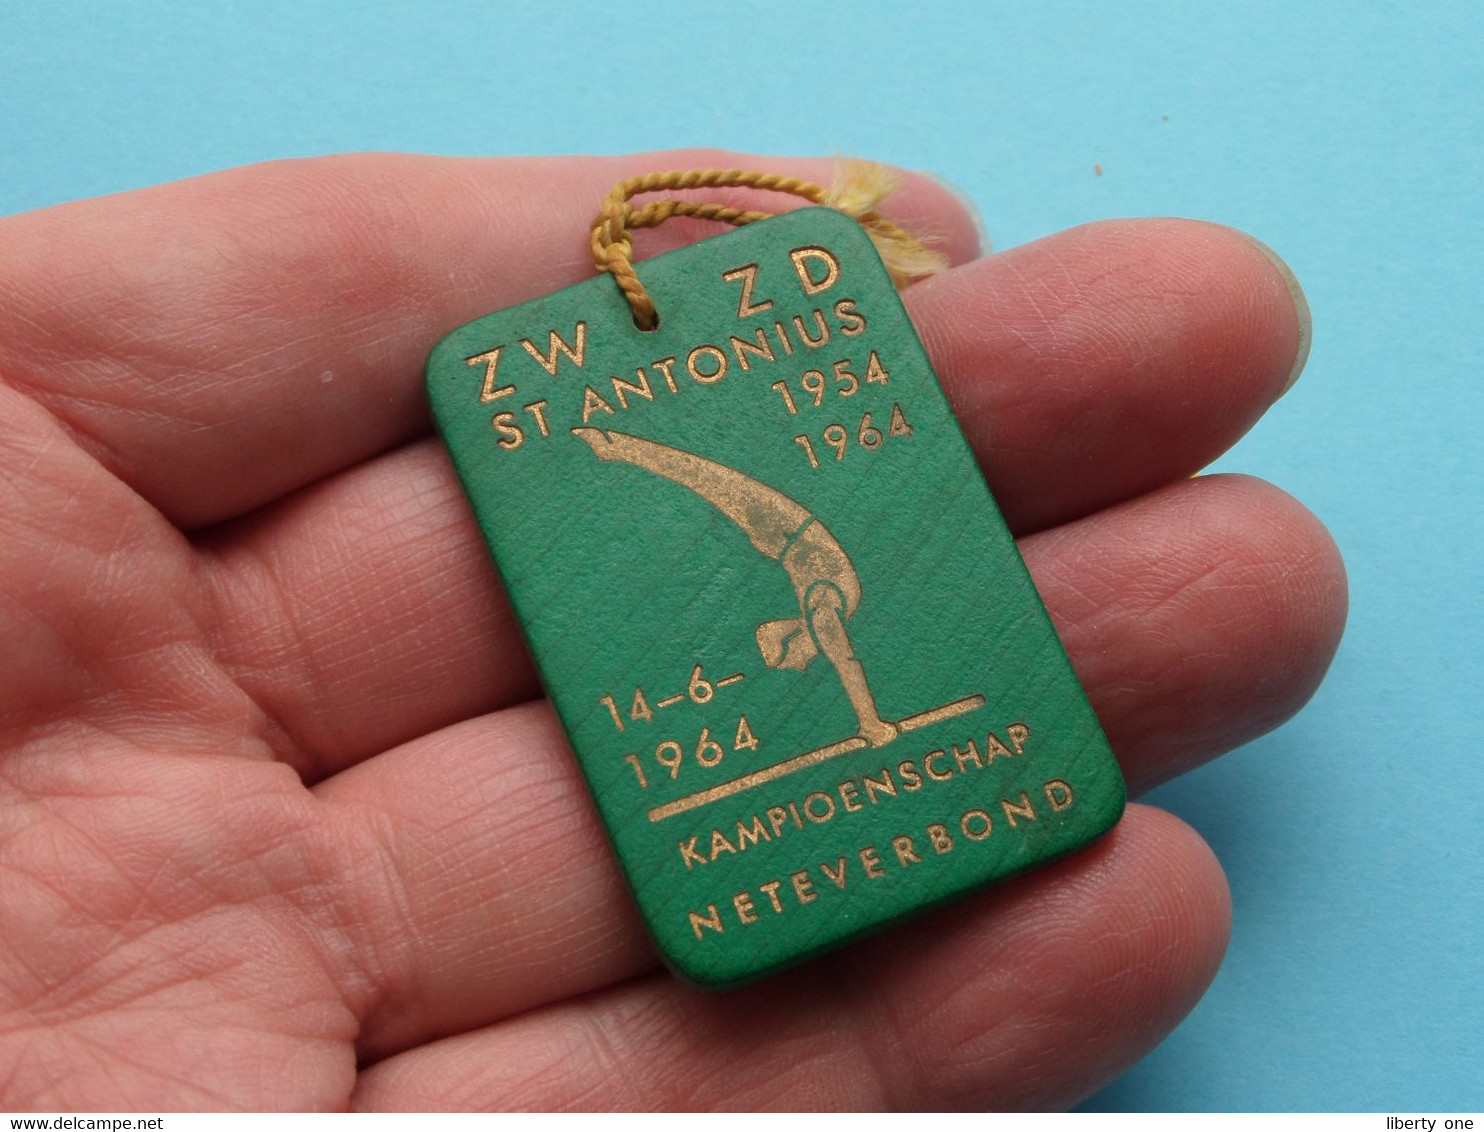 ZW ZD St. ANTONIUS 1954-1964 ( 14-6-1964 ) Kampioenschap NETEVERBOND ( Plaatje In Plastiek > Zie Foto's ) - Gymnastique